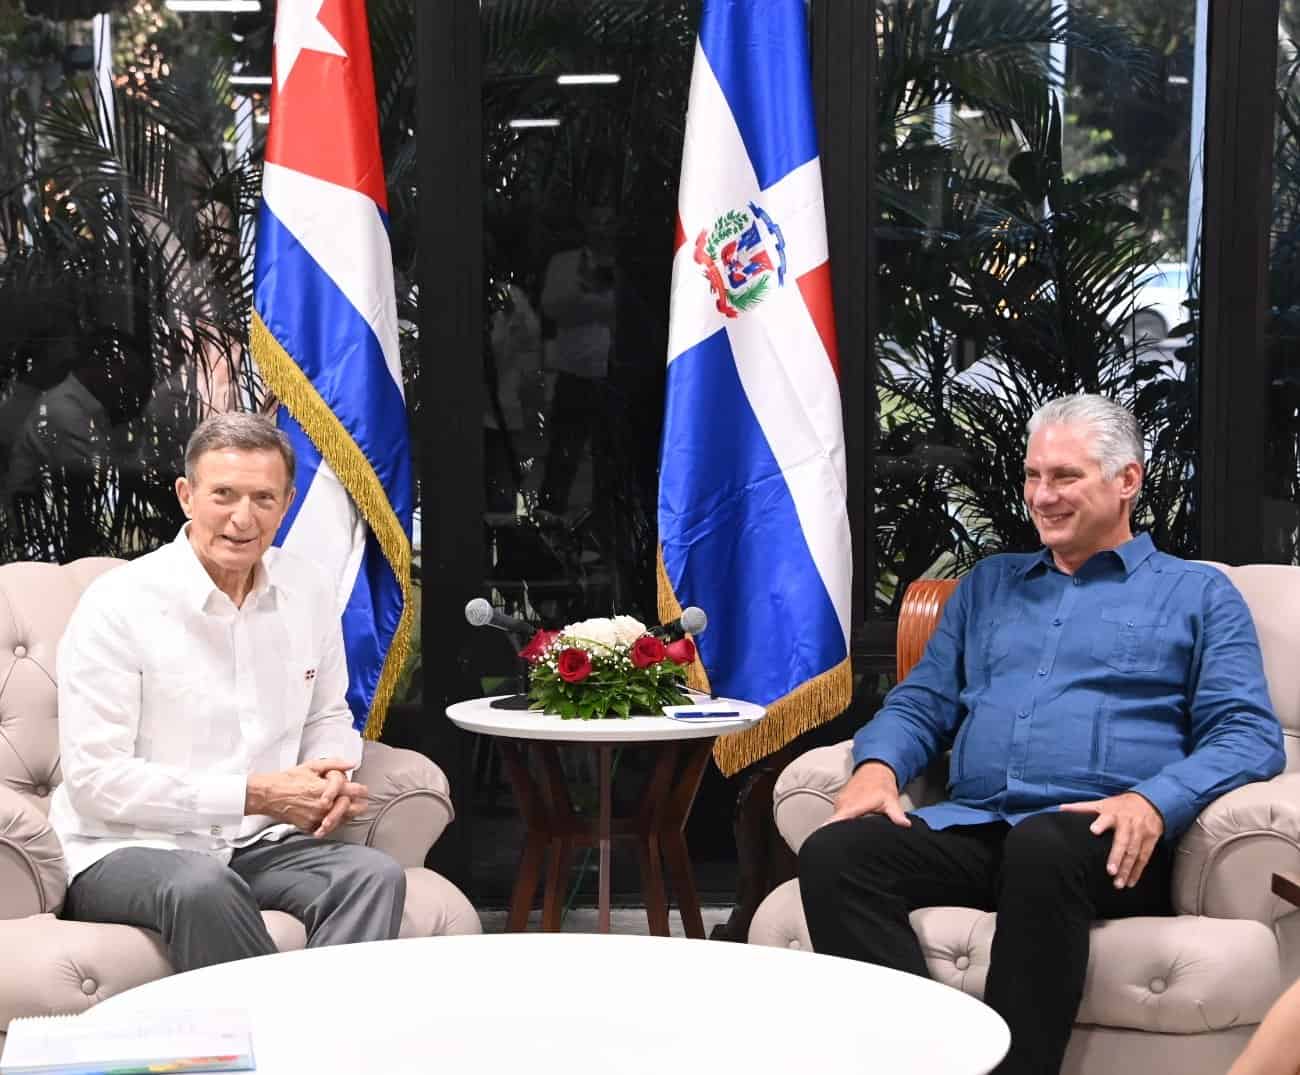 “Es un gusto tenerte aquí”, el presidente cubano Miguel Díaz-Canel se reúne con Roberto Álvarez